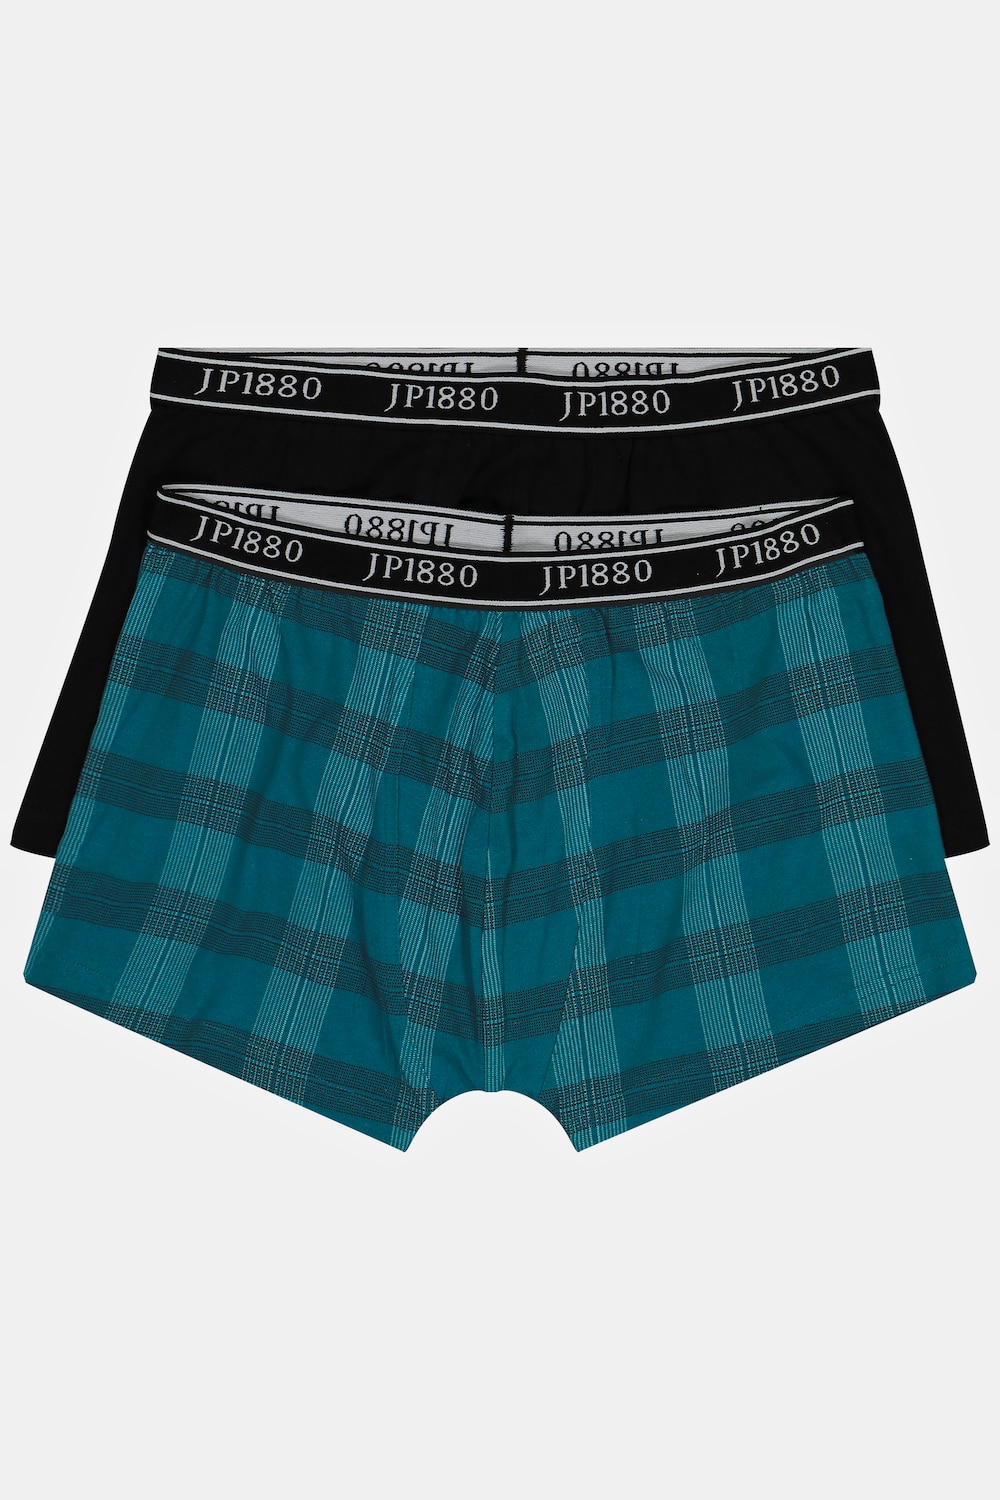 grandes tailles lot de 2 boxers à carreaux. label oeko-tex. technologie flexnamic®., hommes, turquoise, taille: 7xl, coton, jp1880